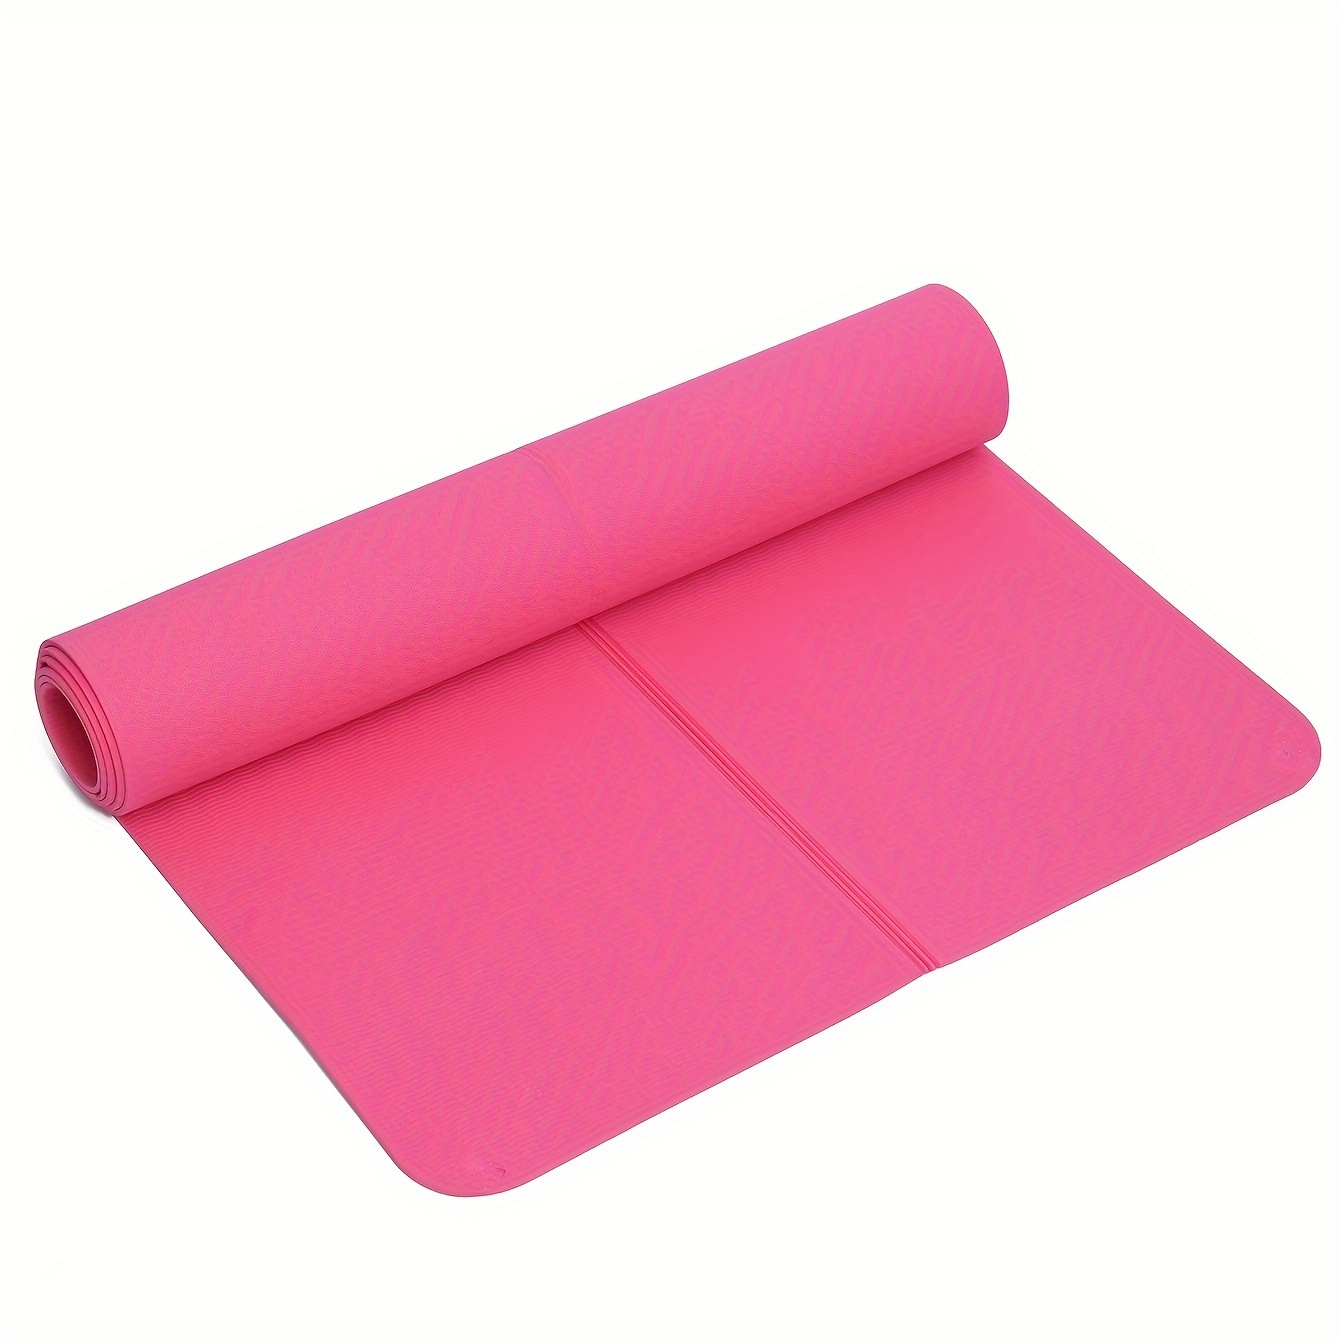 Pliable Tapis de Yoga Antidérapant Epais Mat Gymnastique Fitness